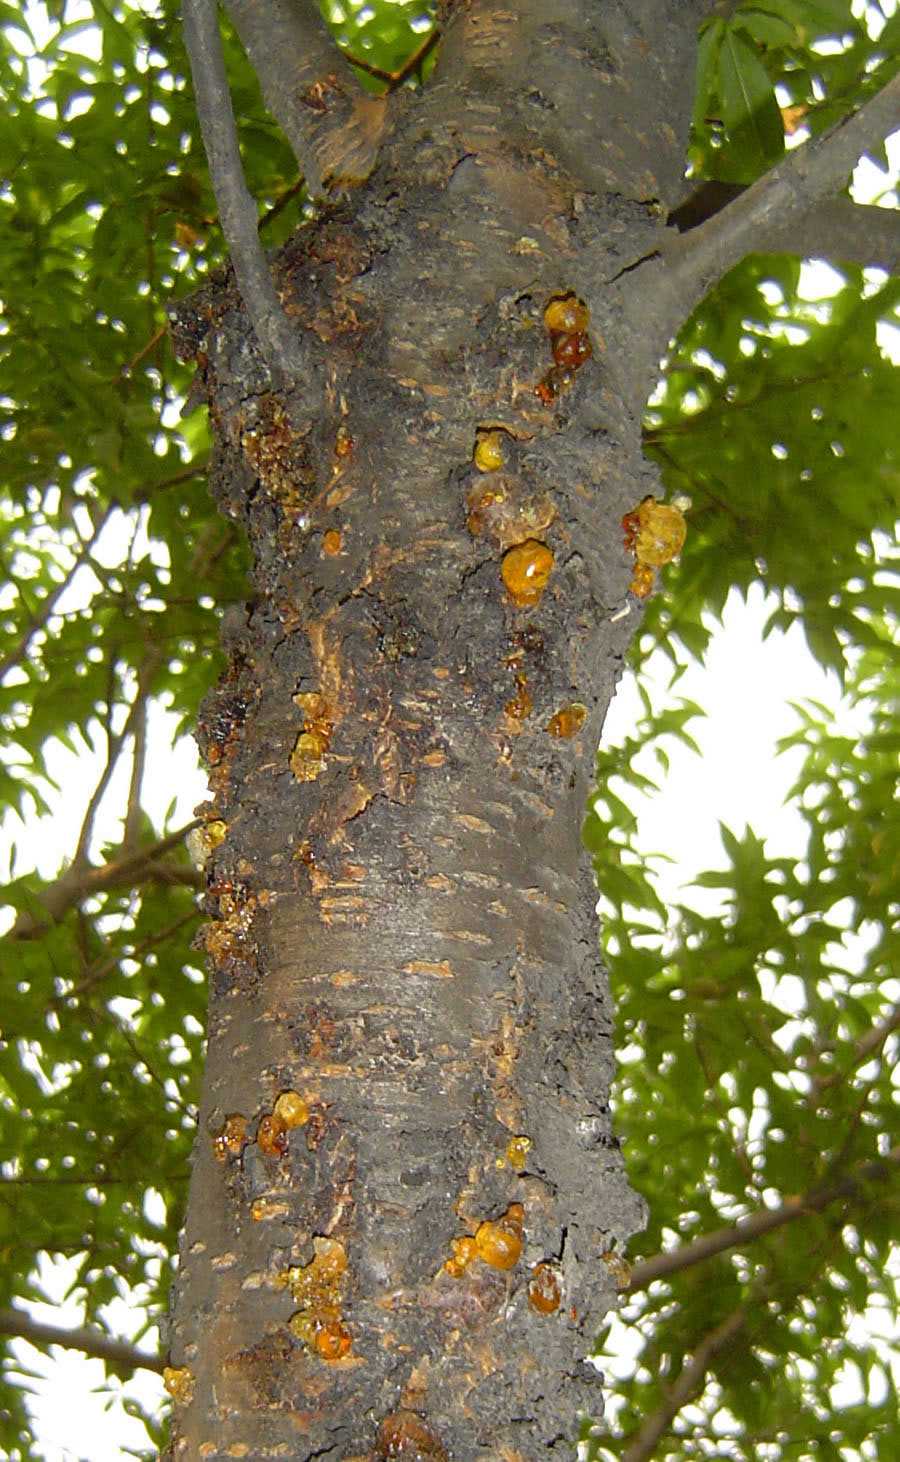 核果类果树流胶病的发生及防治